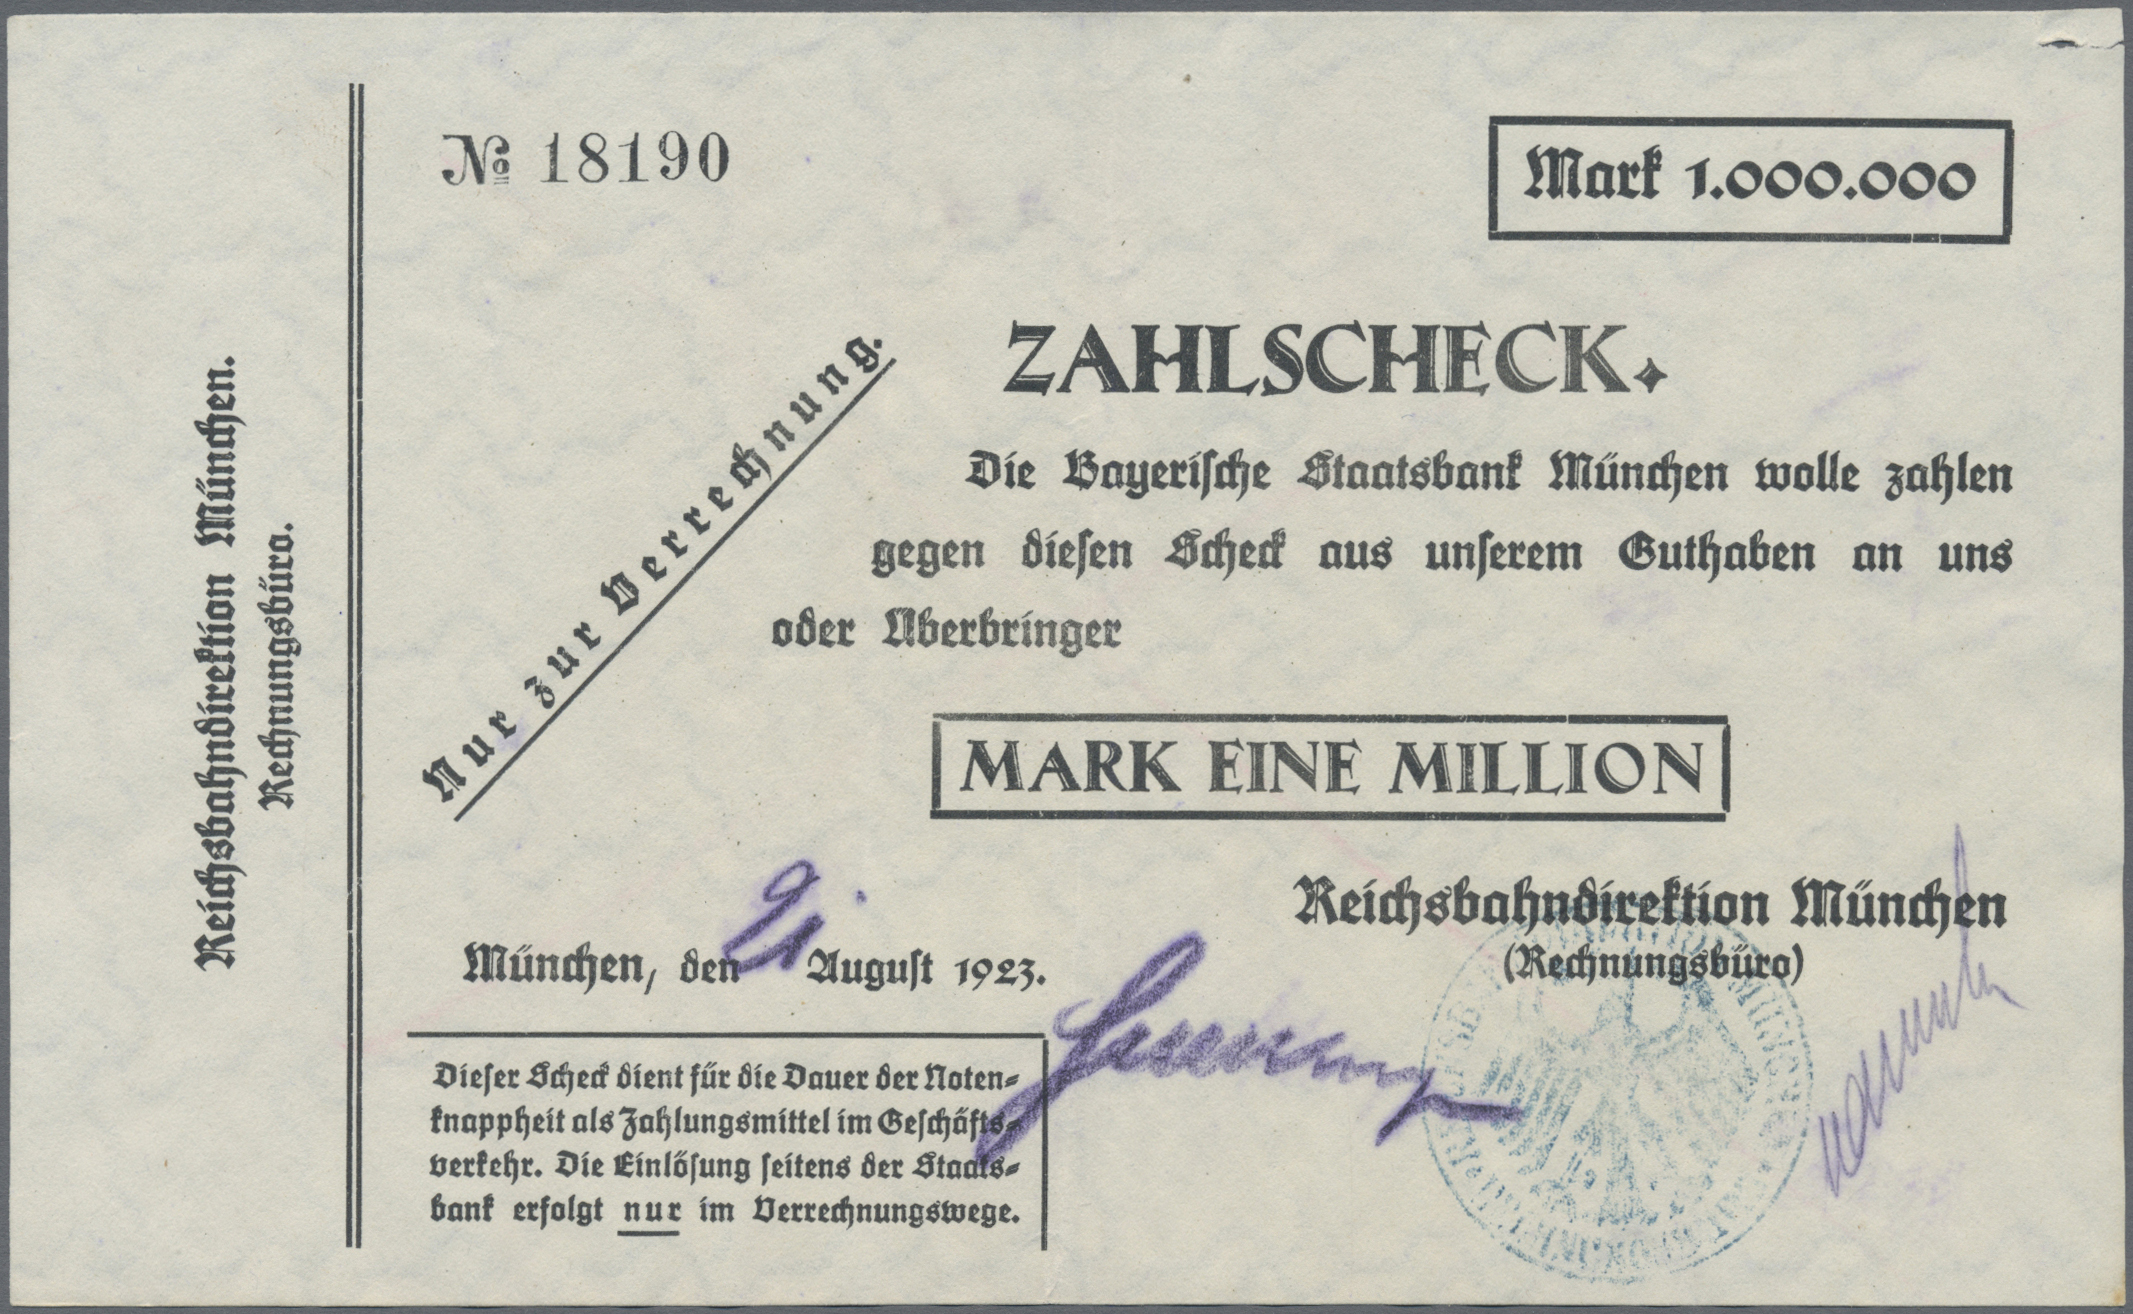 Lot 00560 - Deutschland - Reichsbahn / Reichspost | Banknoten  -  Auktionshaus Christoph Gärtner GmbH & Co. KG 54th AUCTION - Day 1 Coins & Banknotes